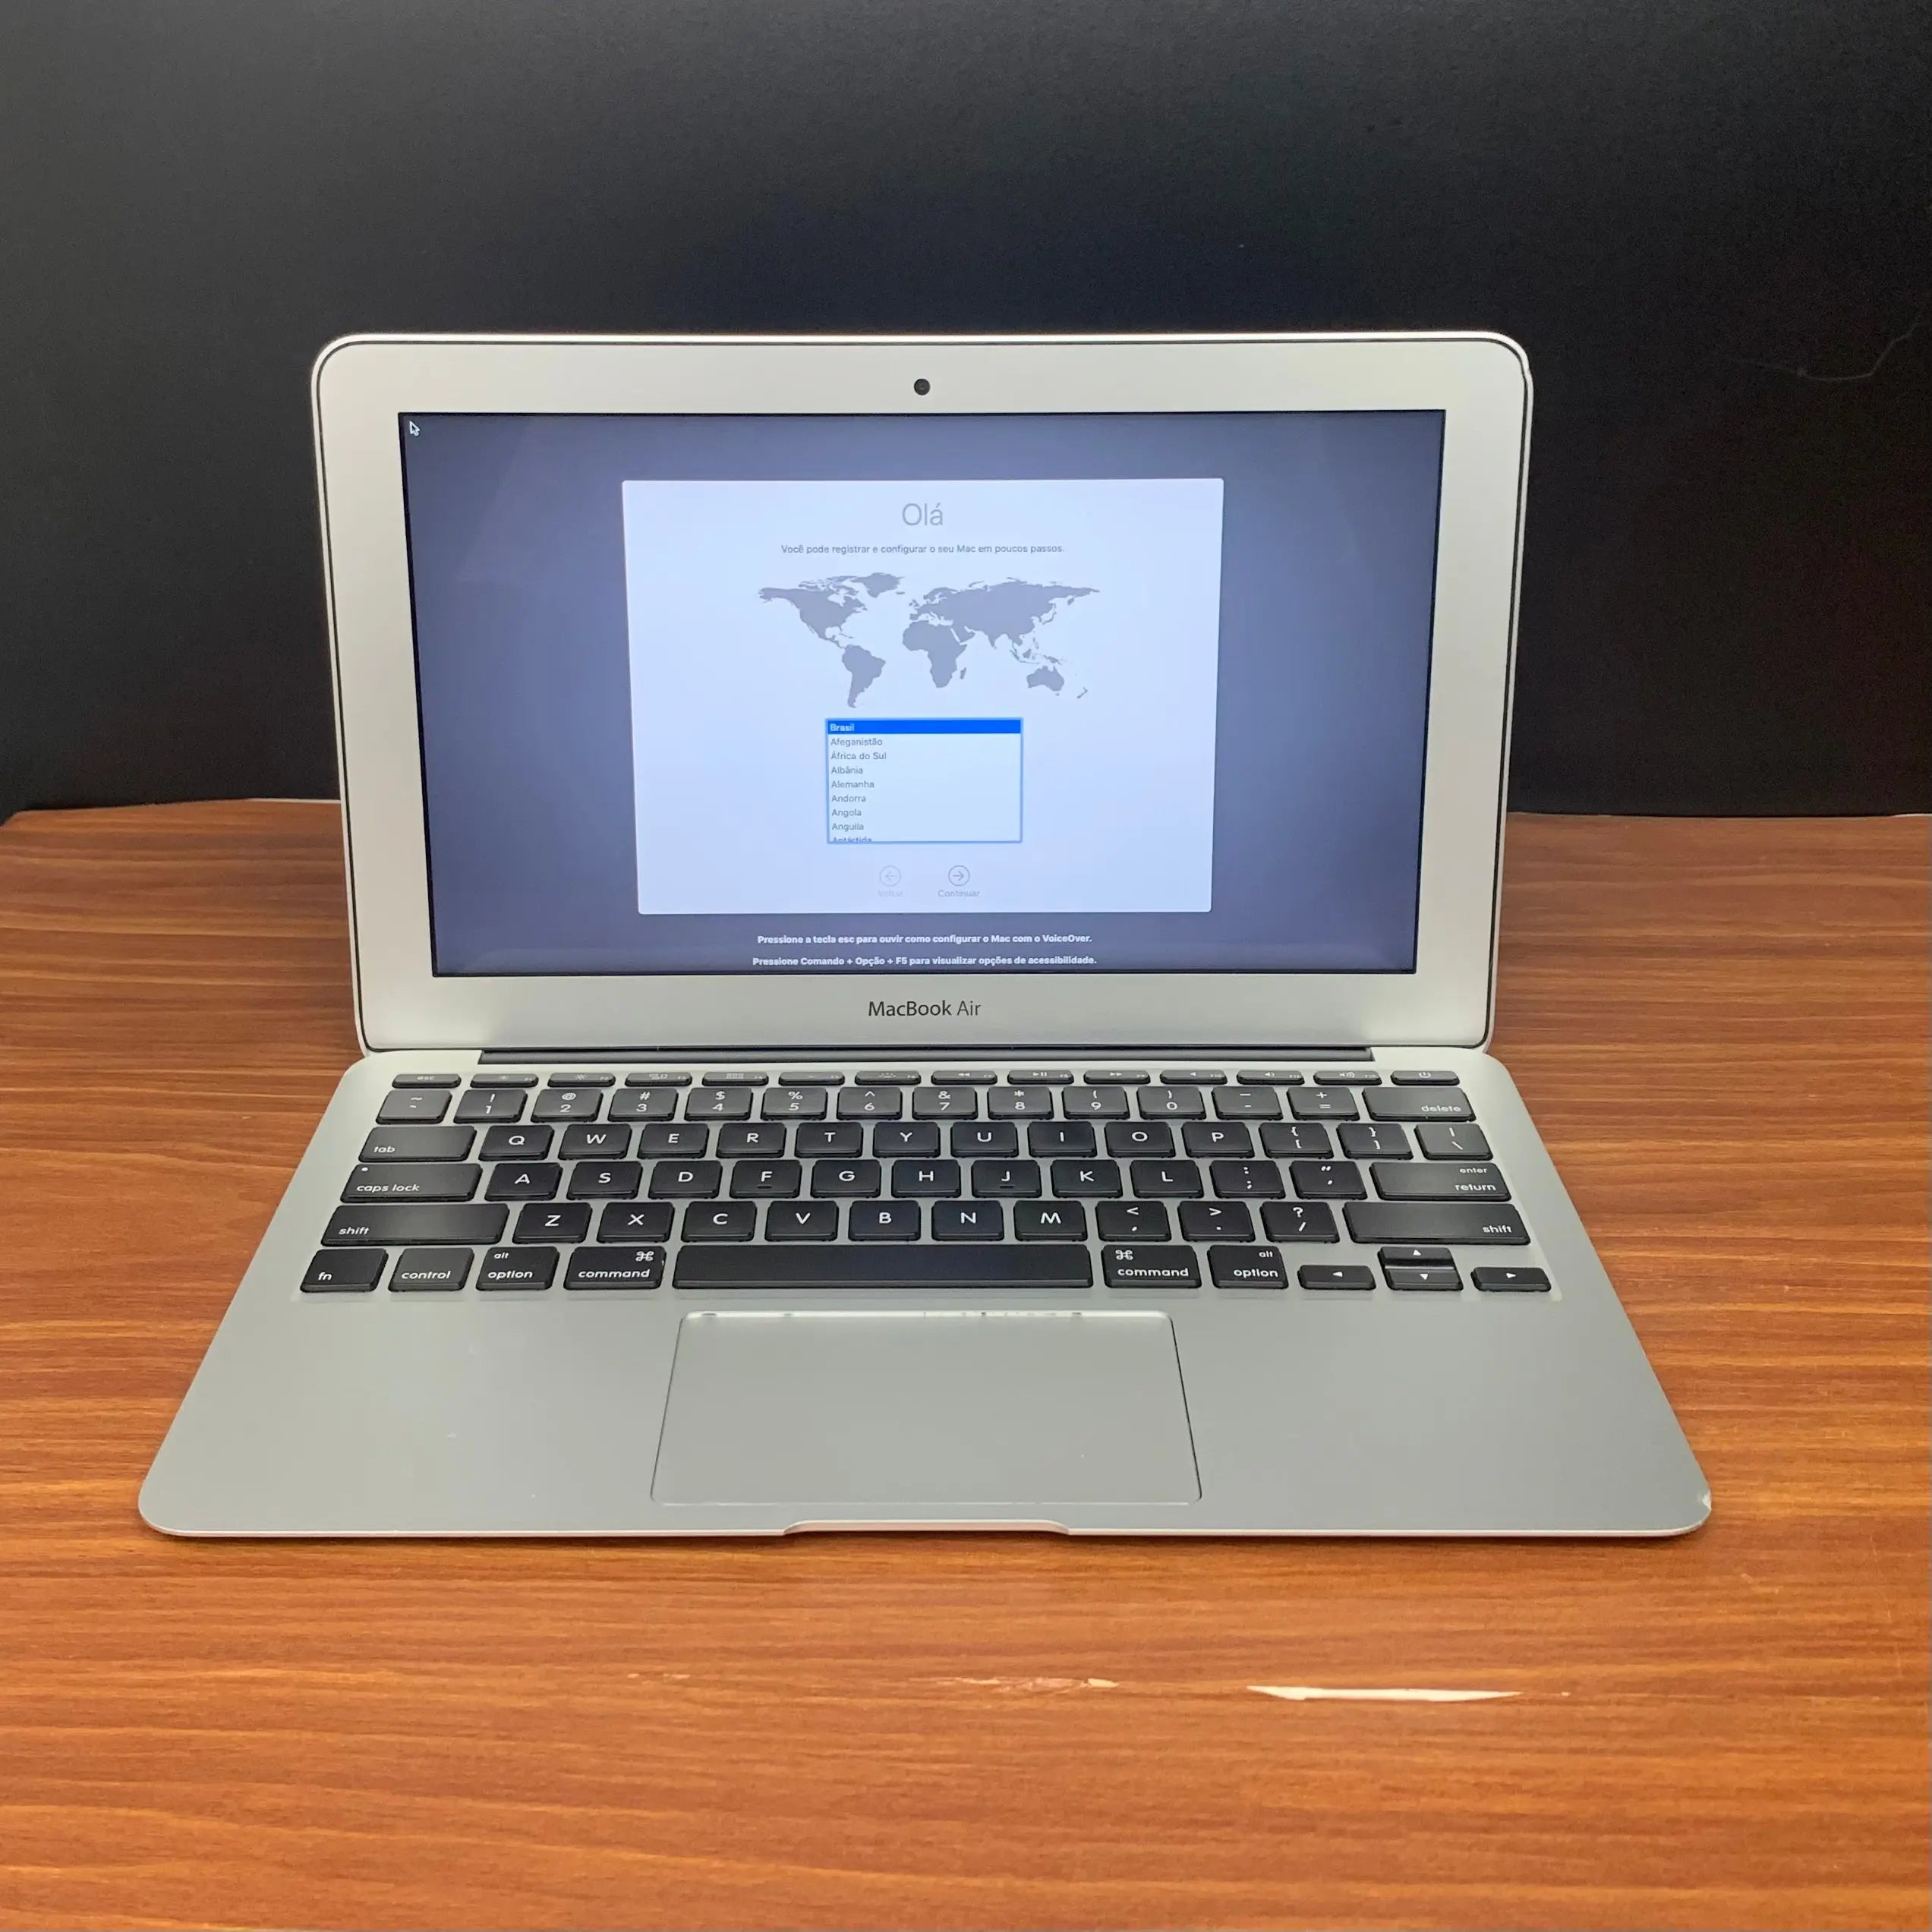 Comprar MacBook Air usado - Macbook Air 11 i5 2013 - TrocaTech Seminovos